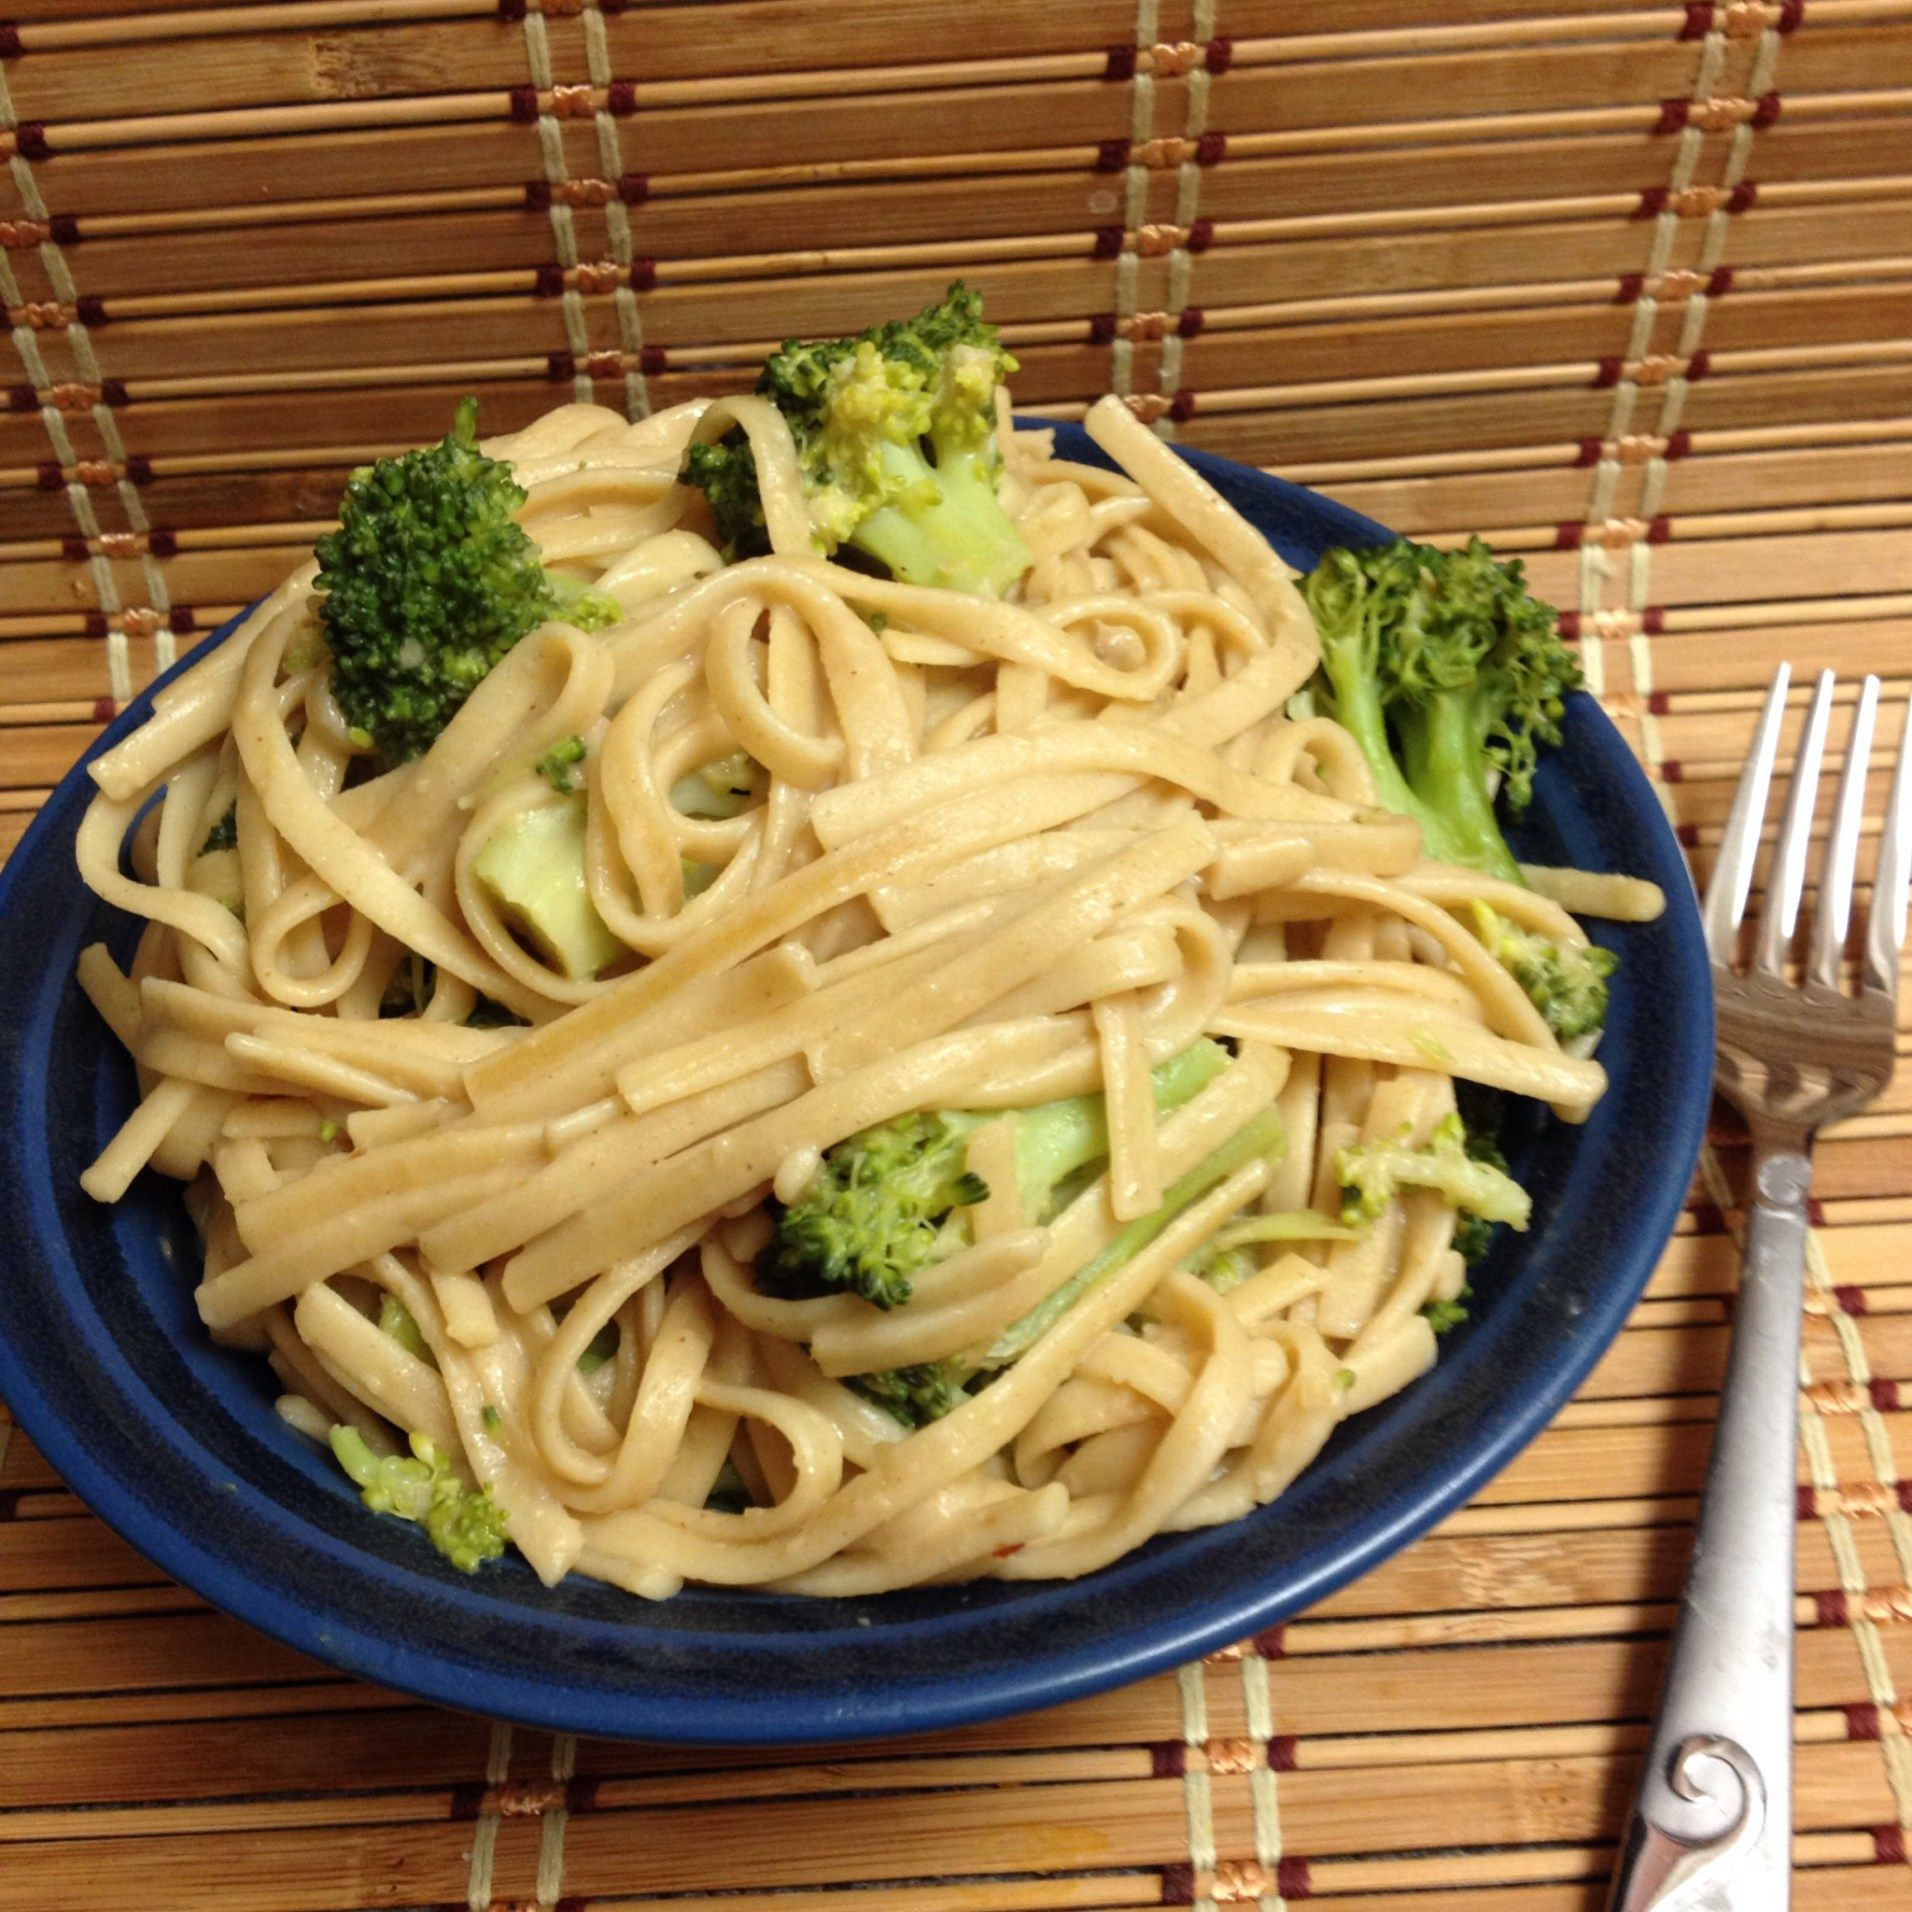 Wfpb Recipes Forks Over Knives Plant Based Diet
 Peanut noodles with Broccoli Forks Over Knives Cookbook